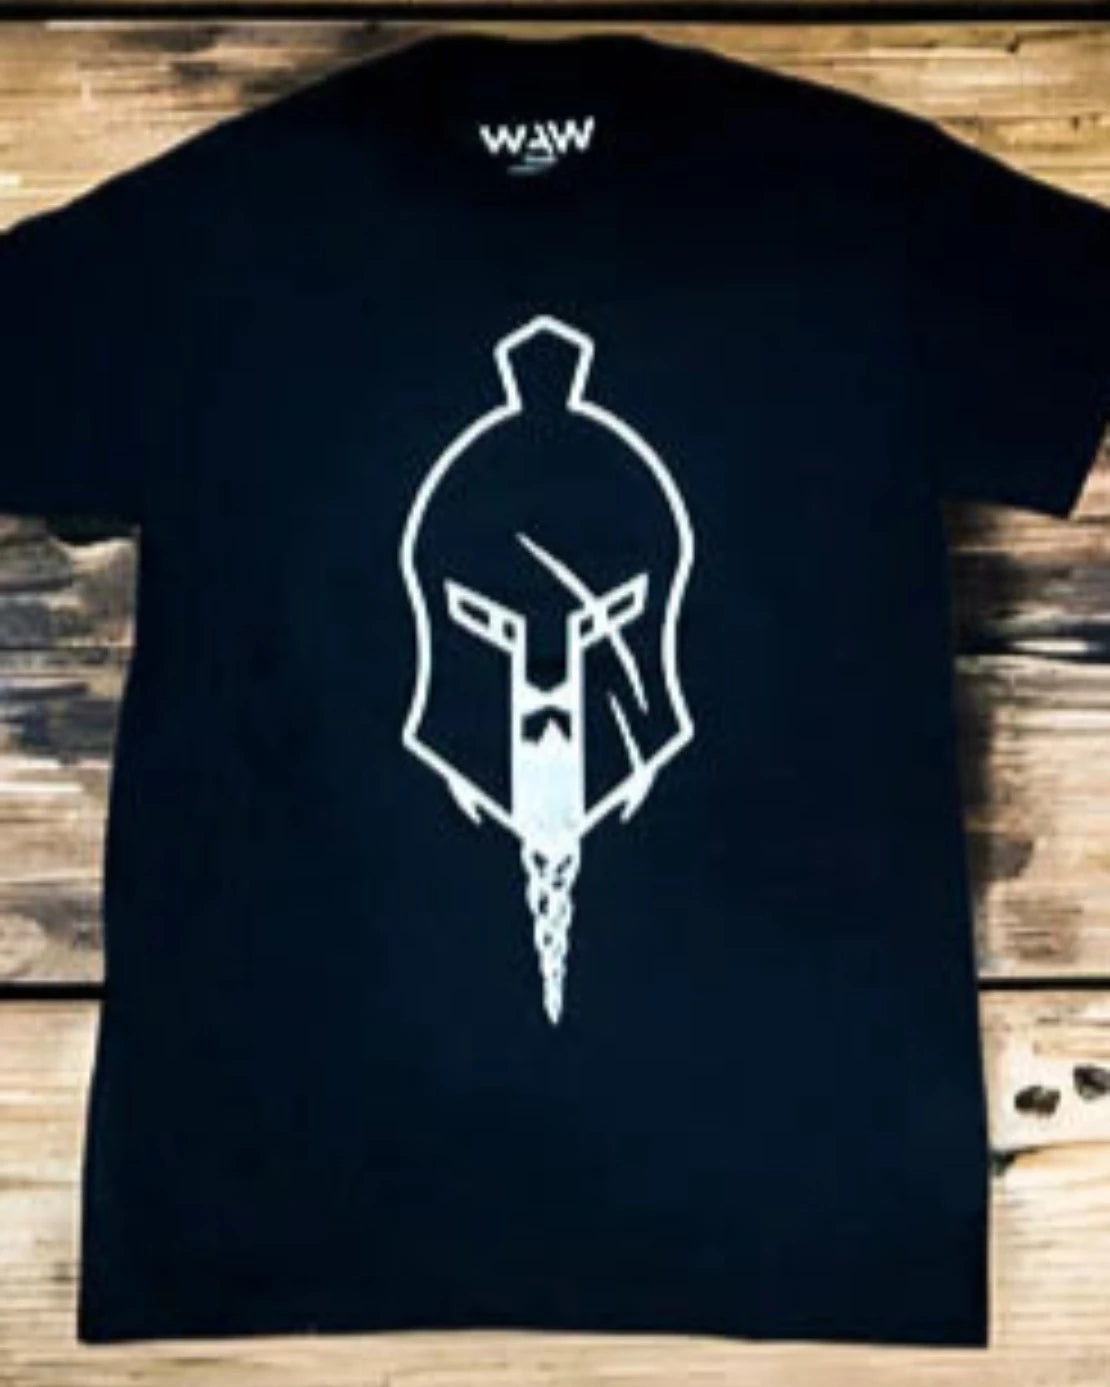 T-shirt - Large black logo (women’s), WeAreWarriorsApparel.com